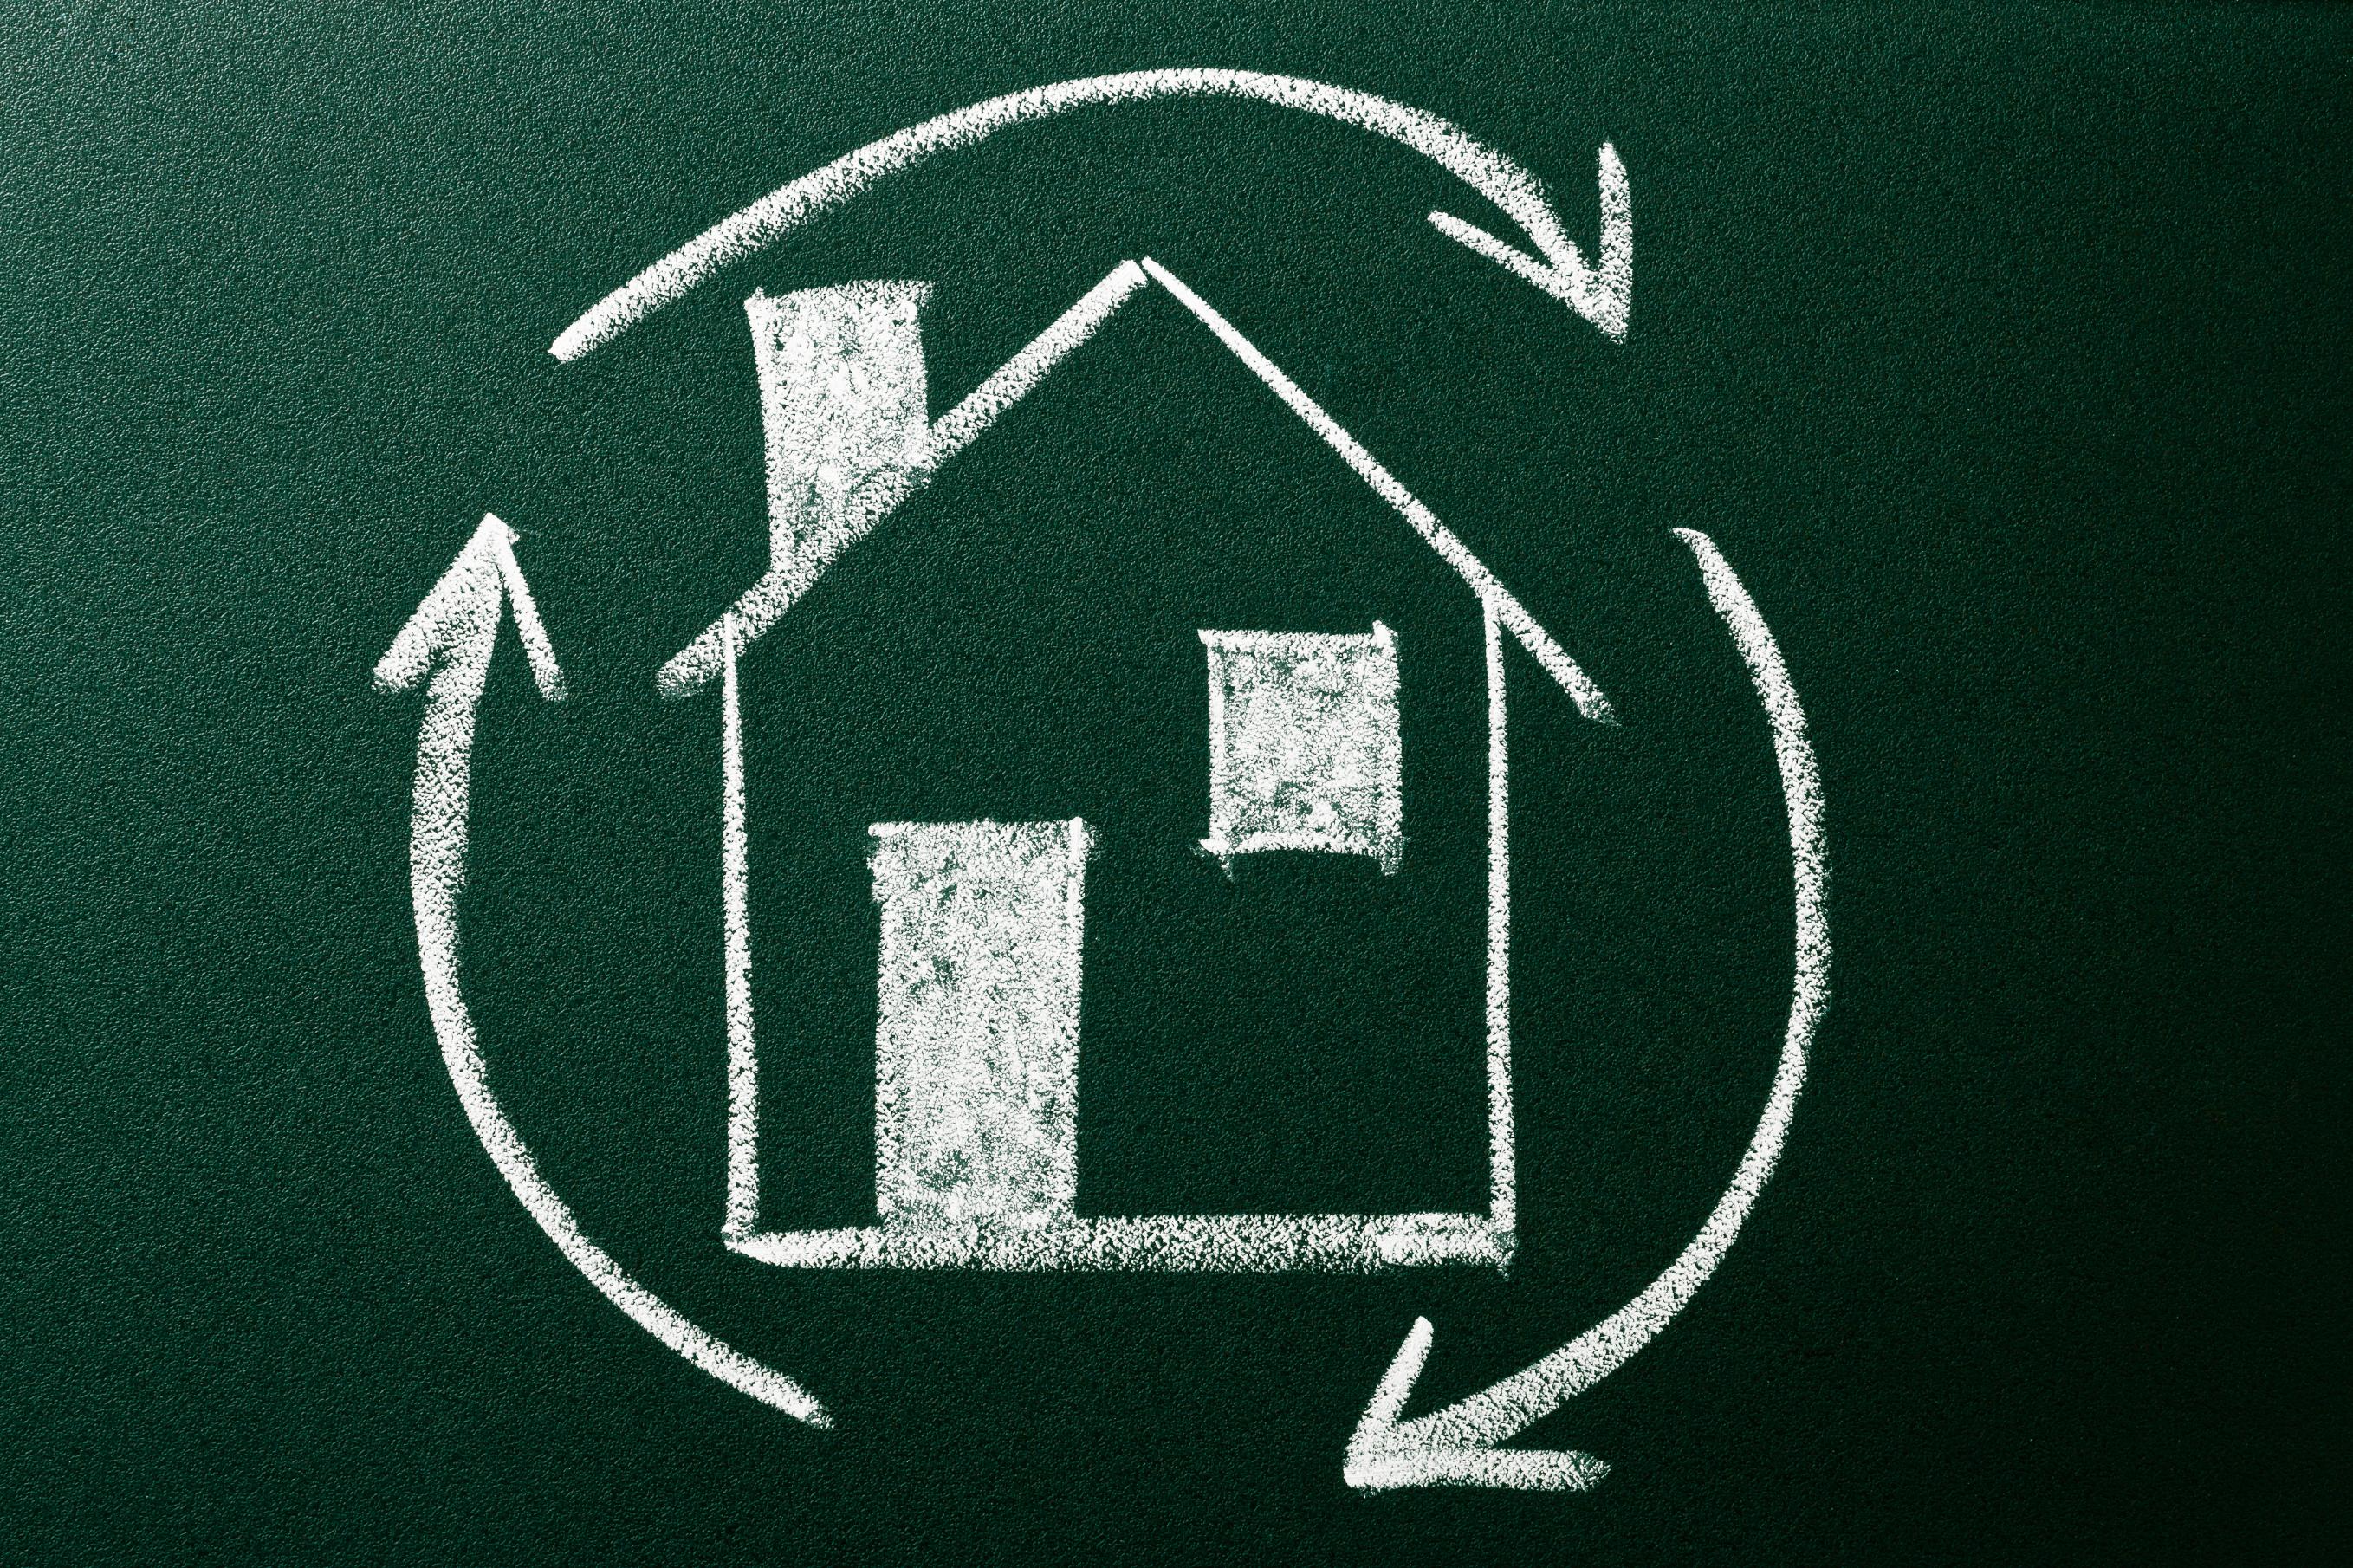 Zeichnung eines Einfamilienhauses im Recyclingkreis als Sinnbild Hausbau mit Recyclingmaterialien